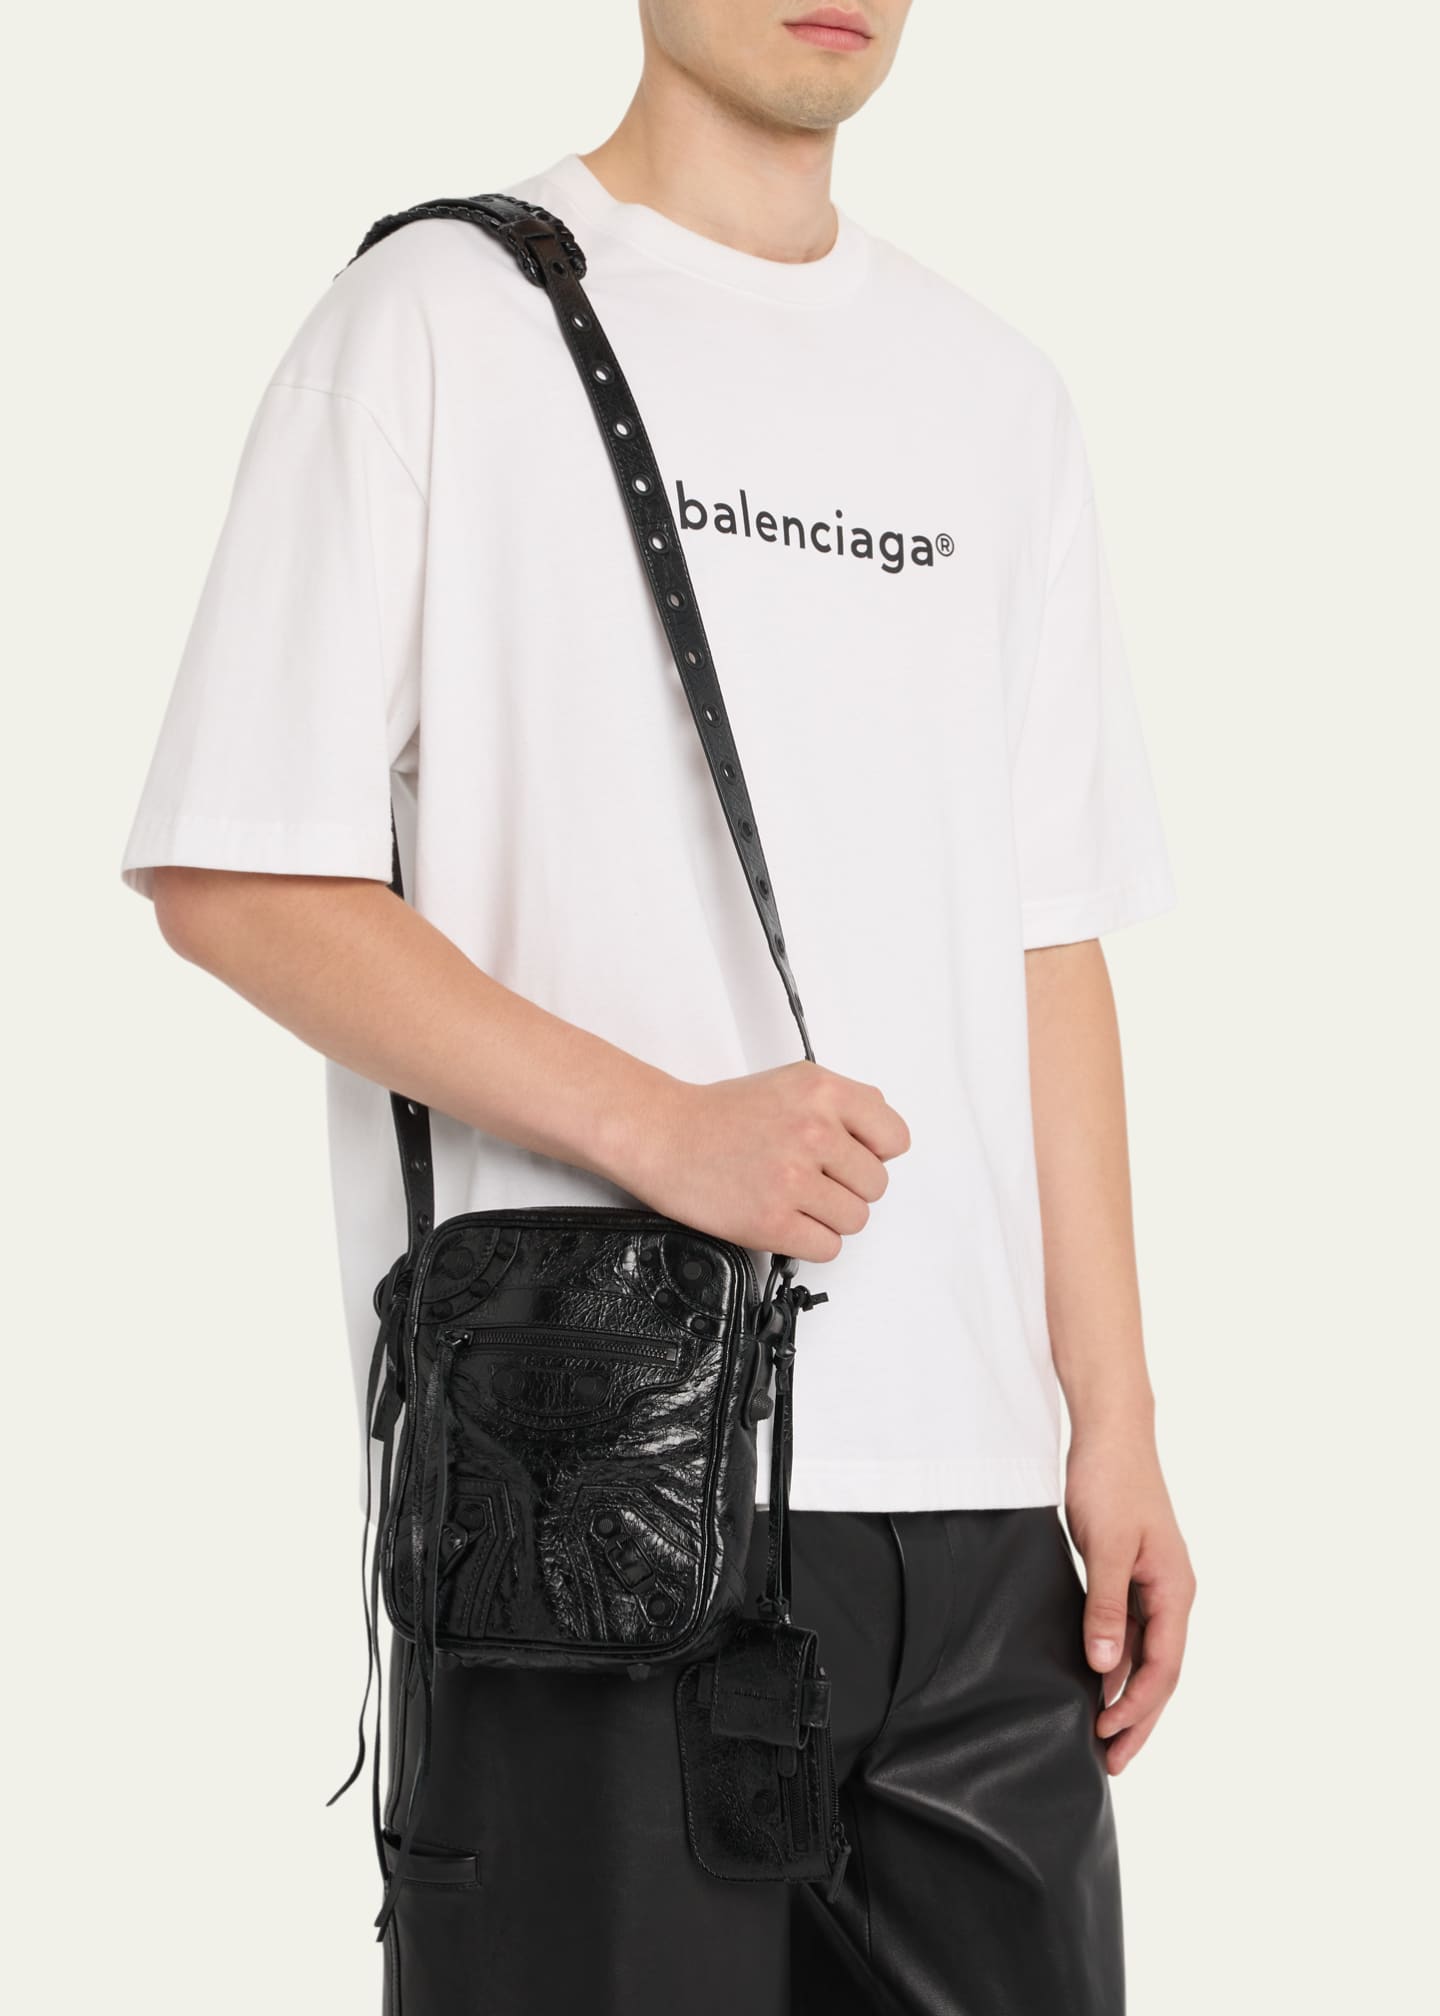 Balenciaga crossbody bag